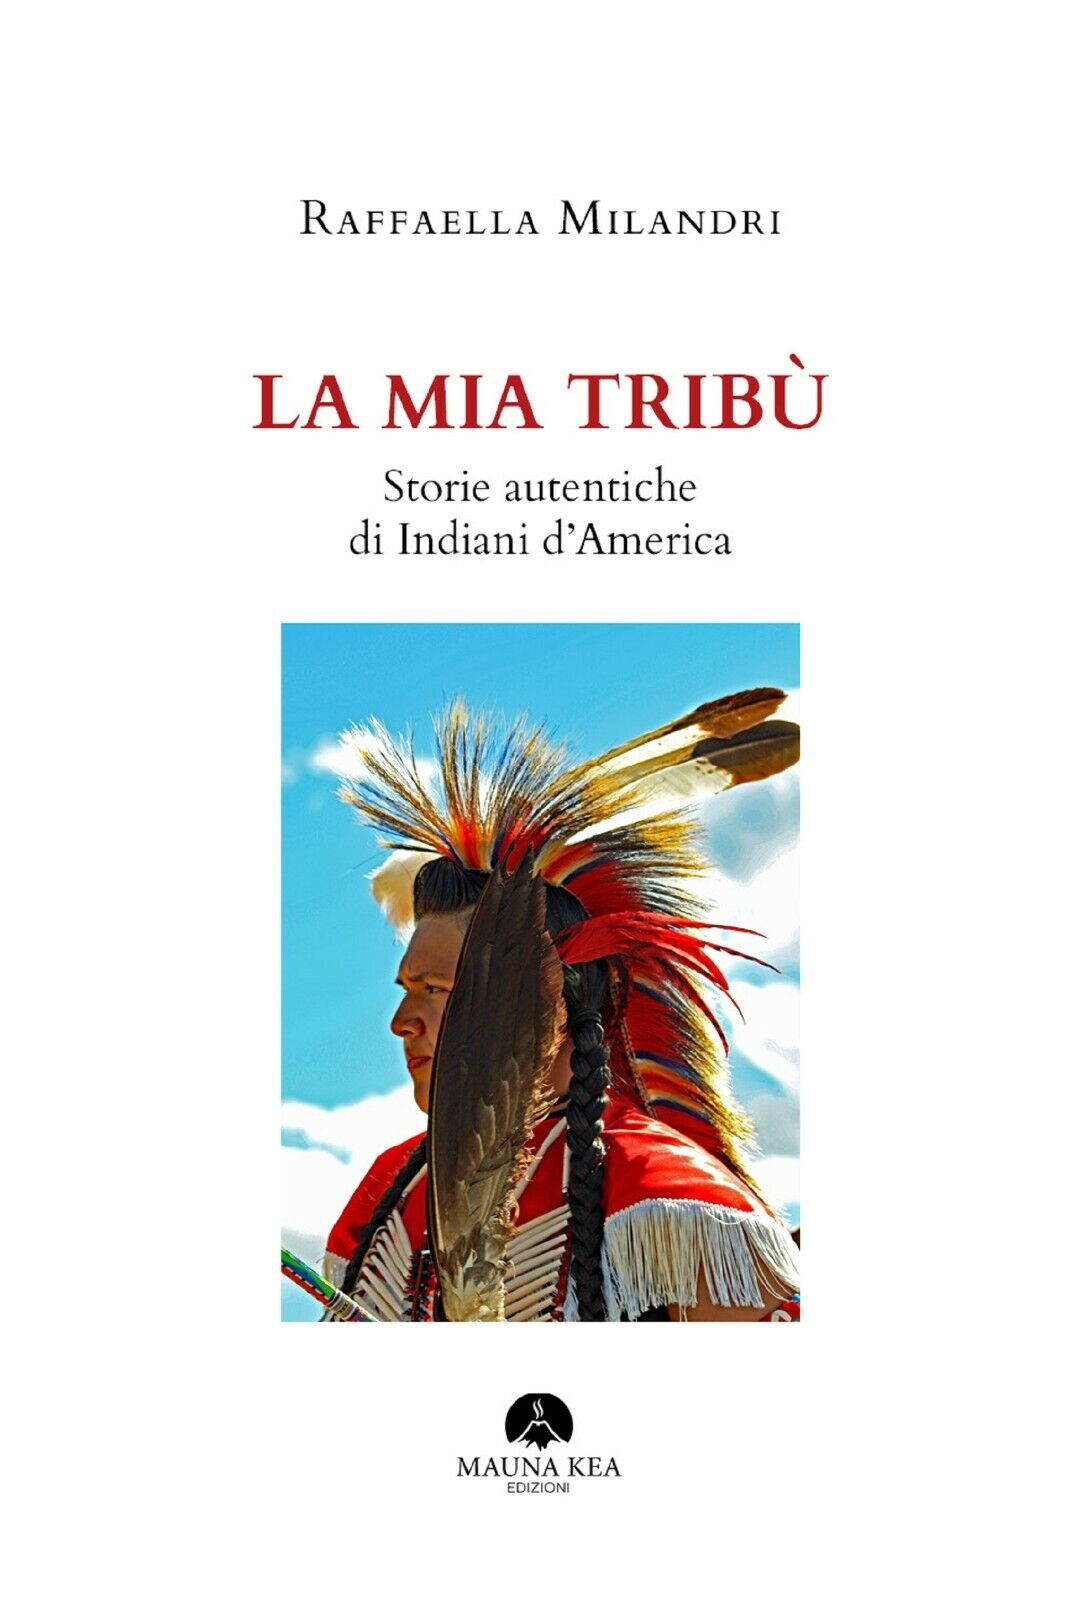 La mia trib?. Storie autentiche di indiani d'America di Raffaella Milandri,  202